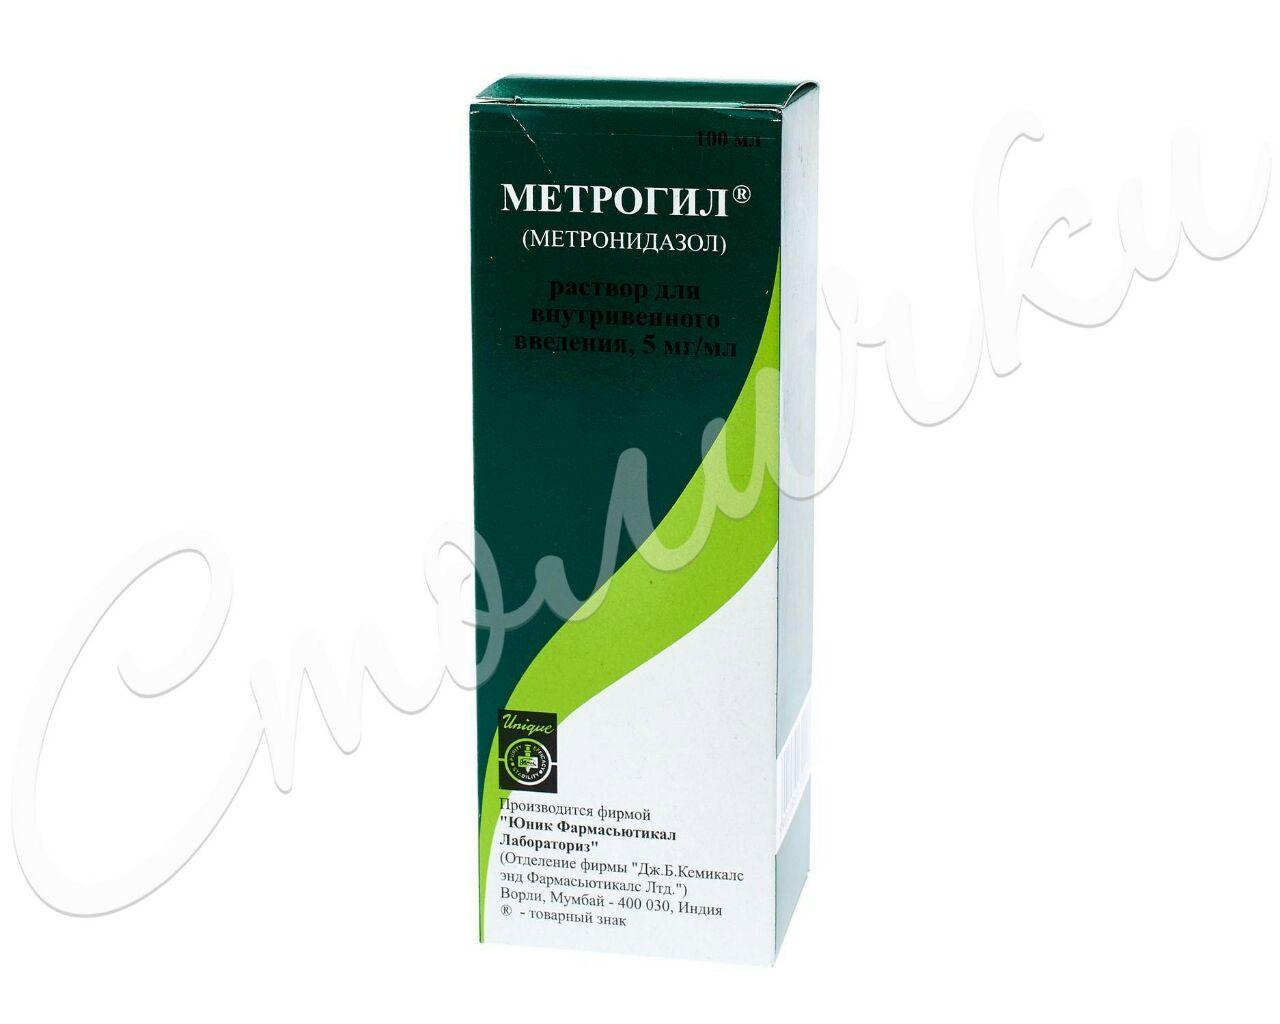 Metrid — tarkibi metronidazol bolgan antibiotik.